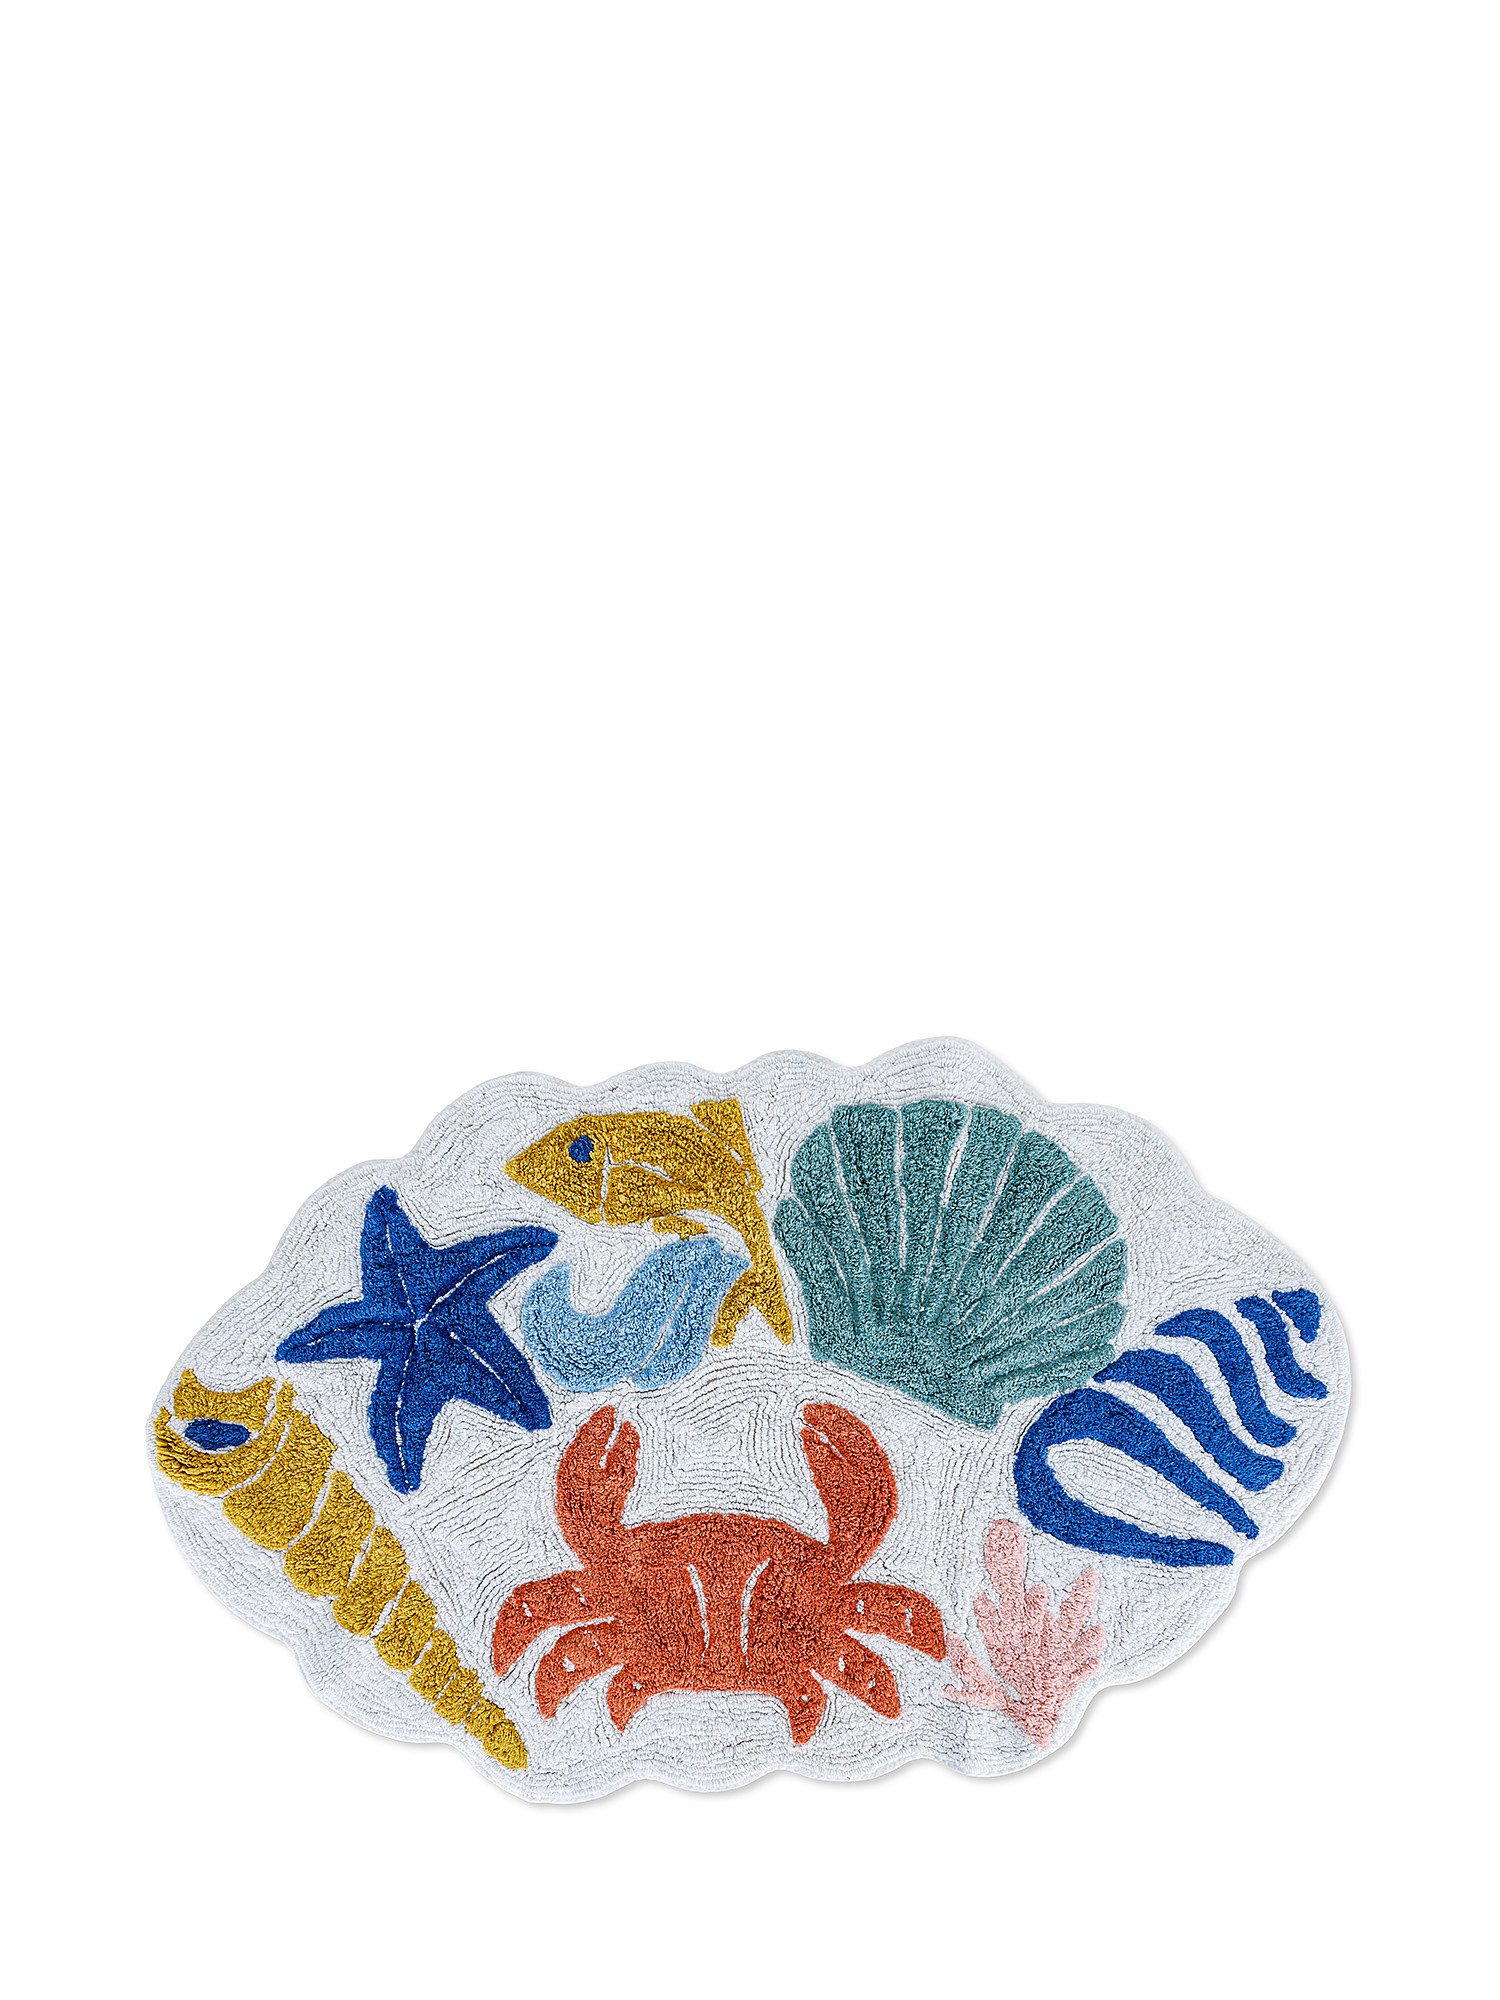 Tappeto bagno sagomato motivi marini, Multicolor, large